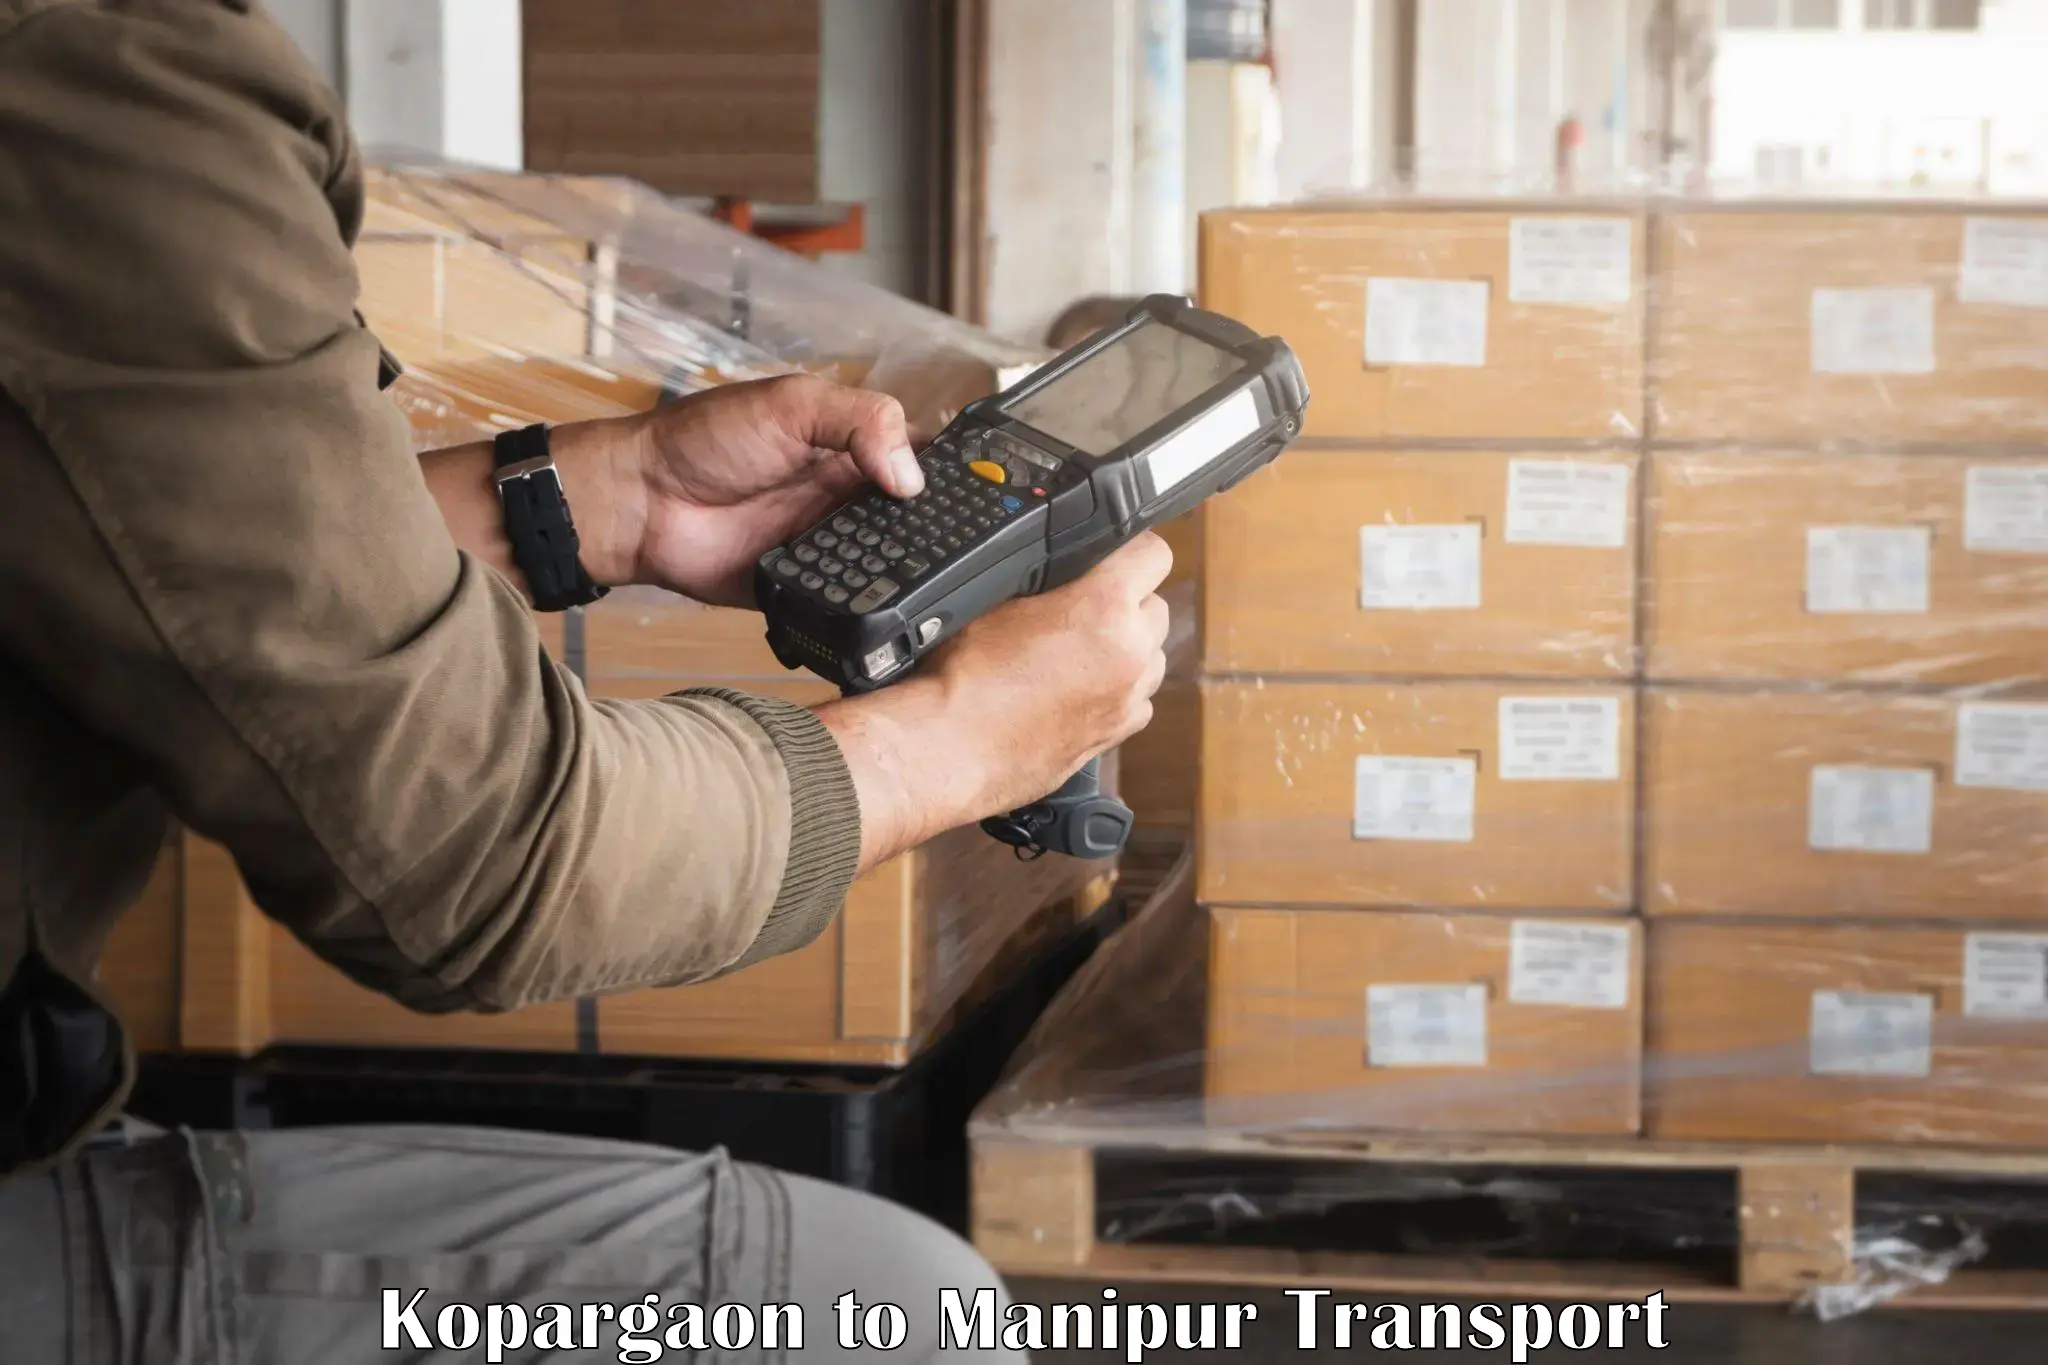 Furniture transport service Kopargaon to Chandel